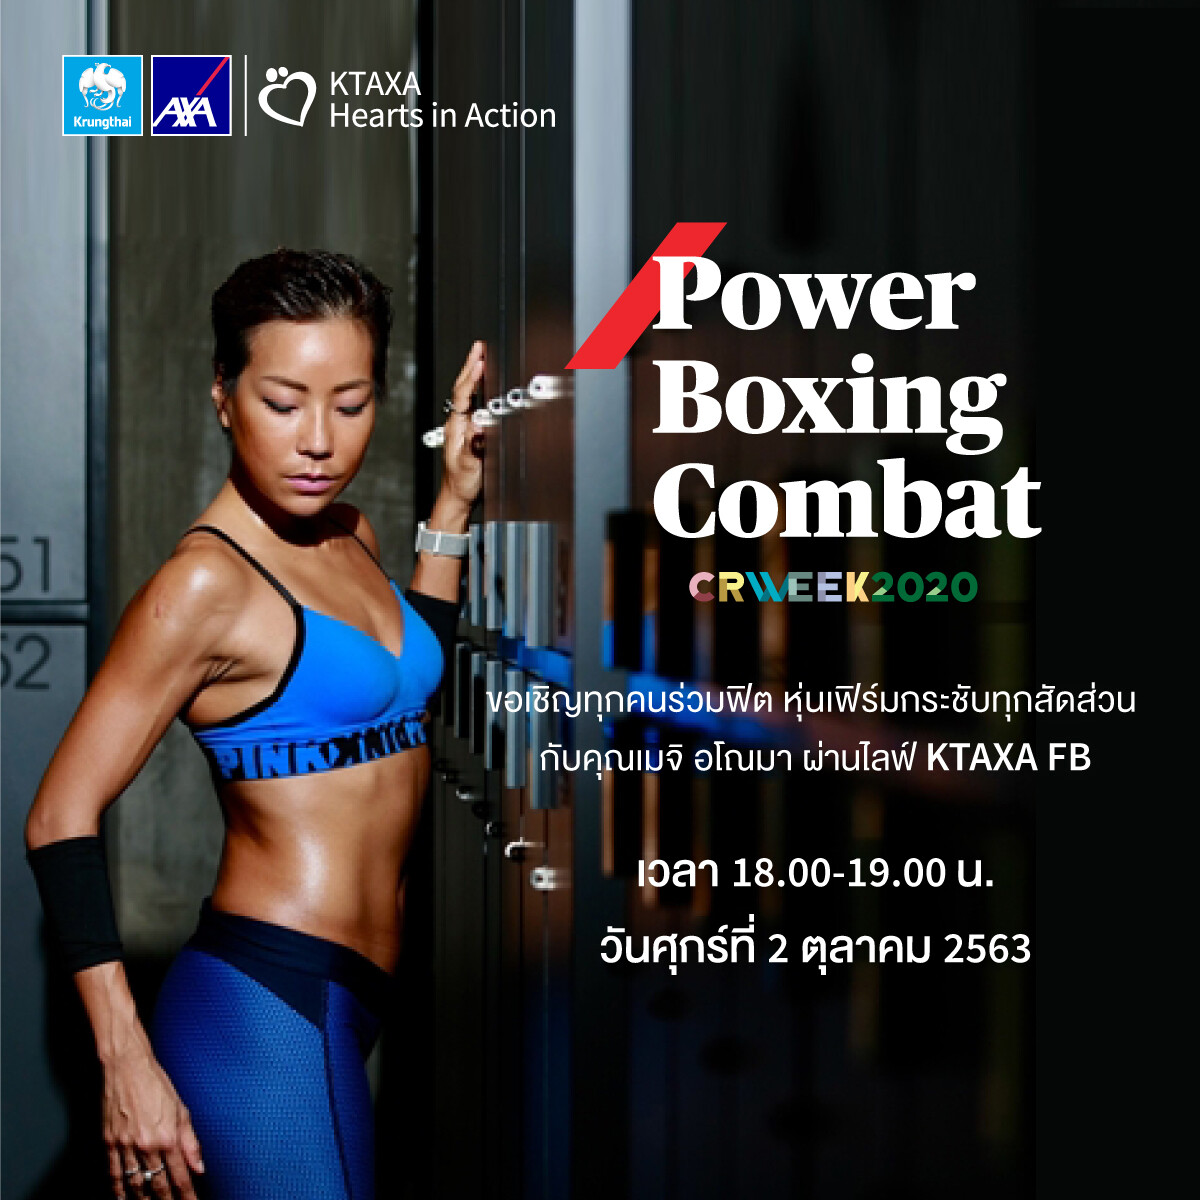 กรุงไทย–แอกซ่า ประกันชีวิต เชิญชวนเข้าร่วมกิจกรรม “Power Boxing Combat”